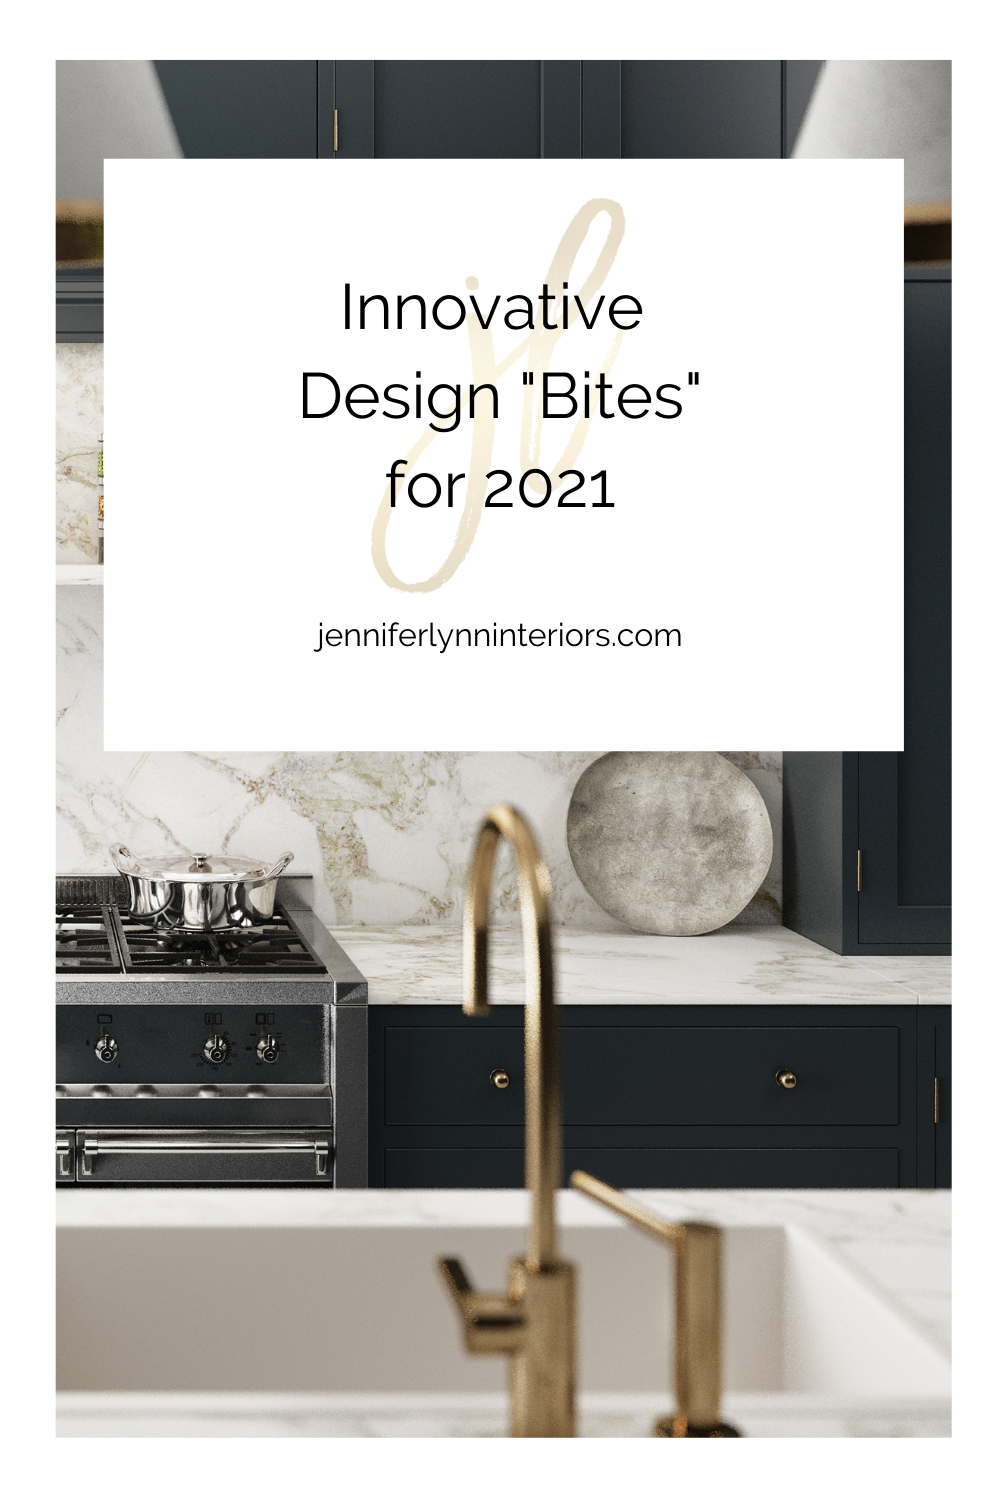 Innovative Design "Bites" for 2021